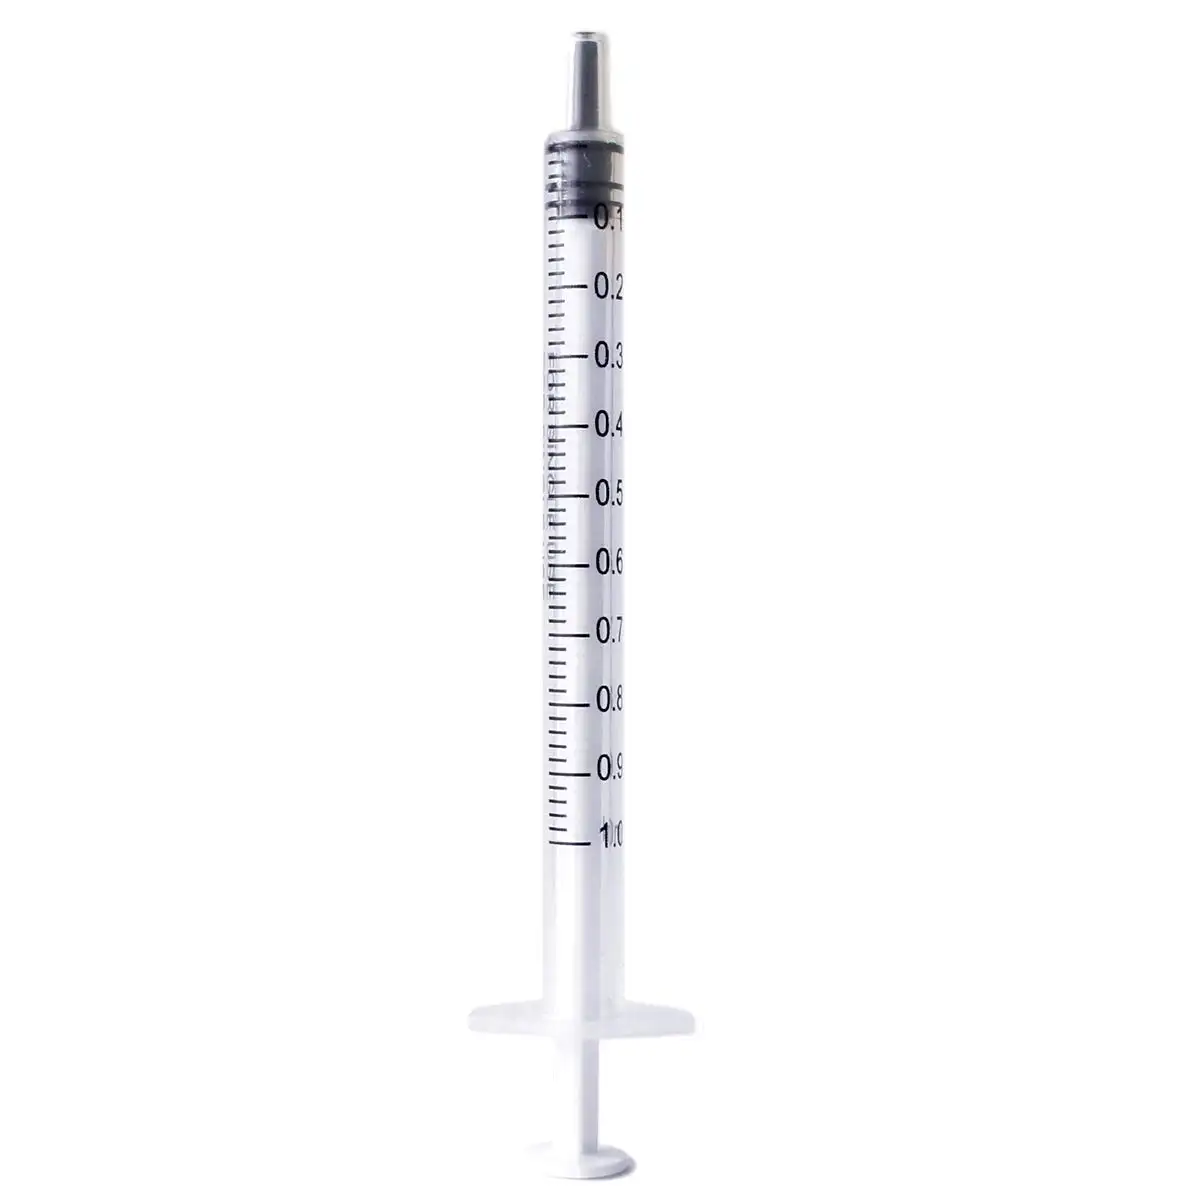 SJ vente en gros seringue en plastique outils de mesure de liquide 1ml 2ml 5ml 10ml seringue individuelle scellée pour les laboratoires scientifiques alimentation Pet